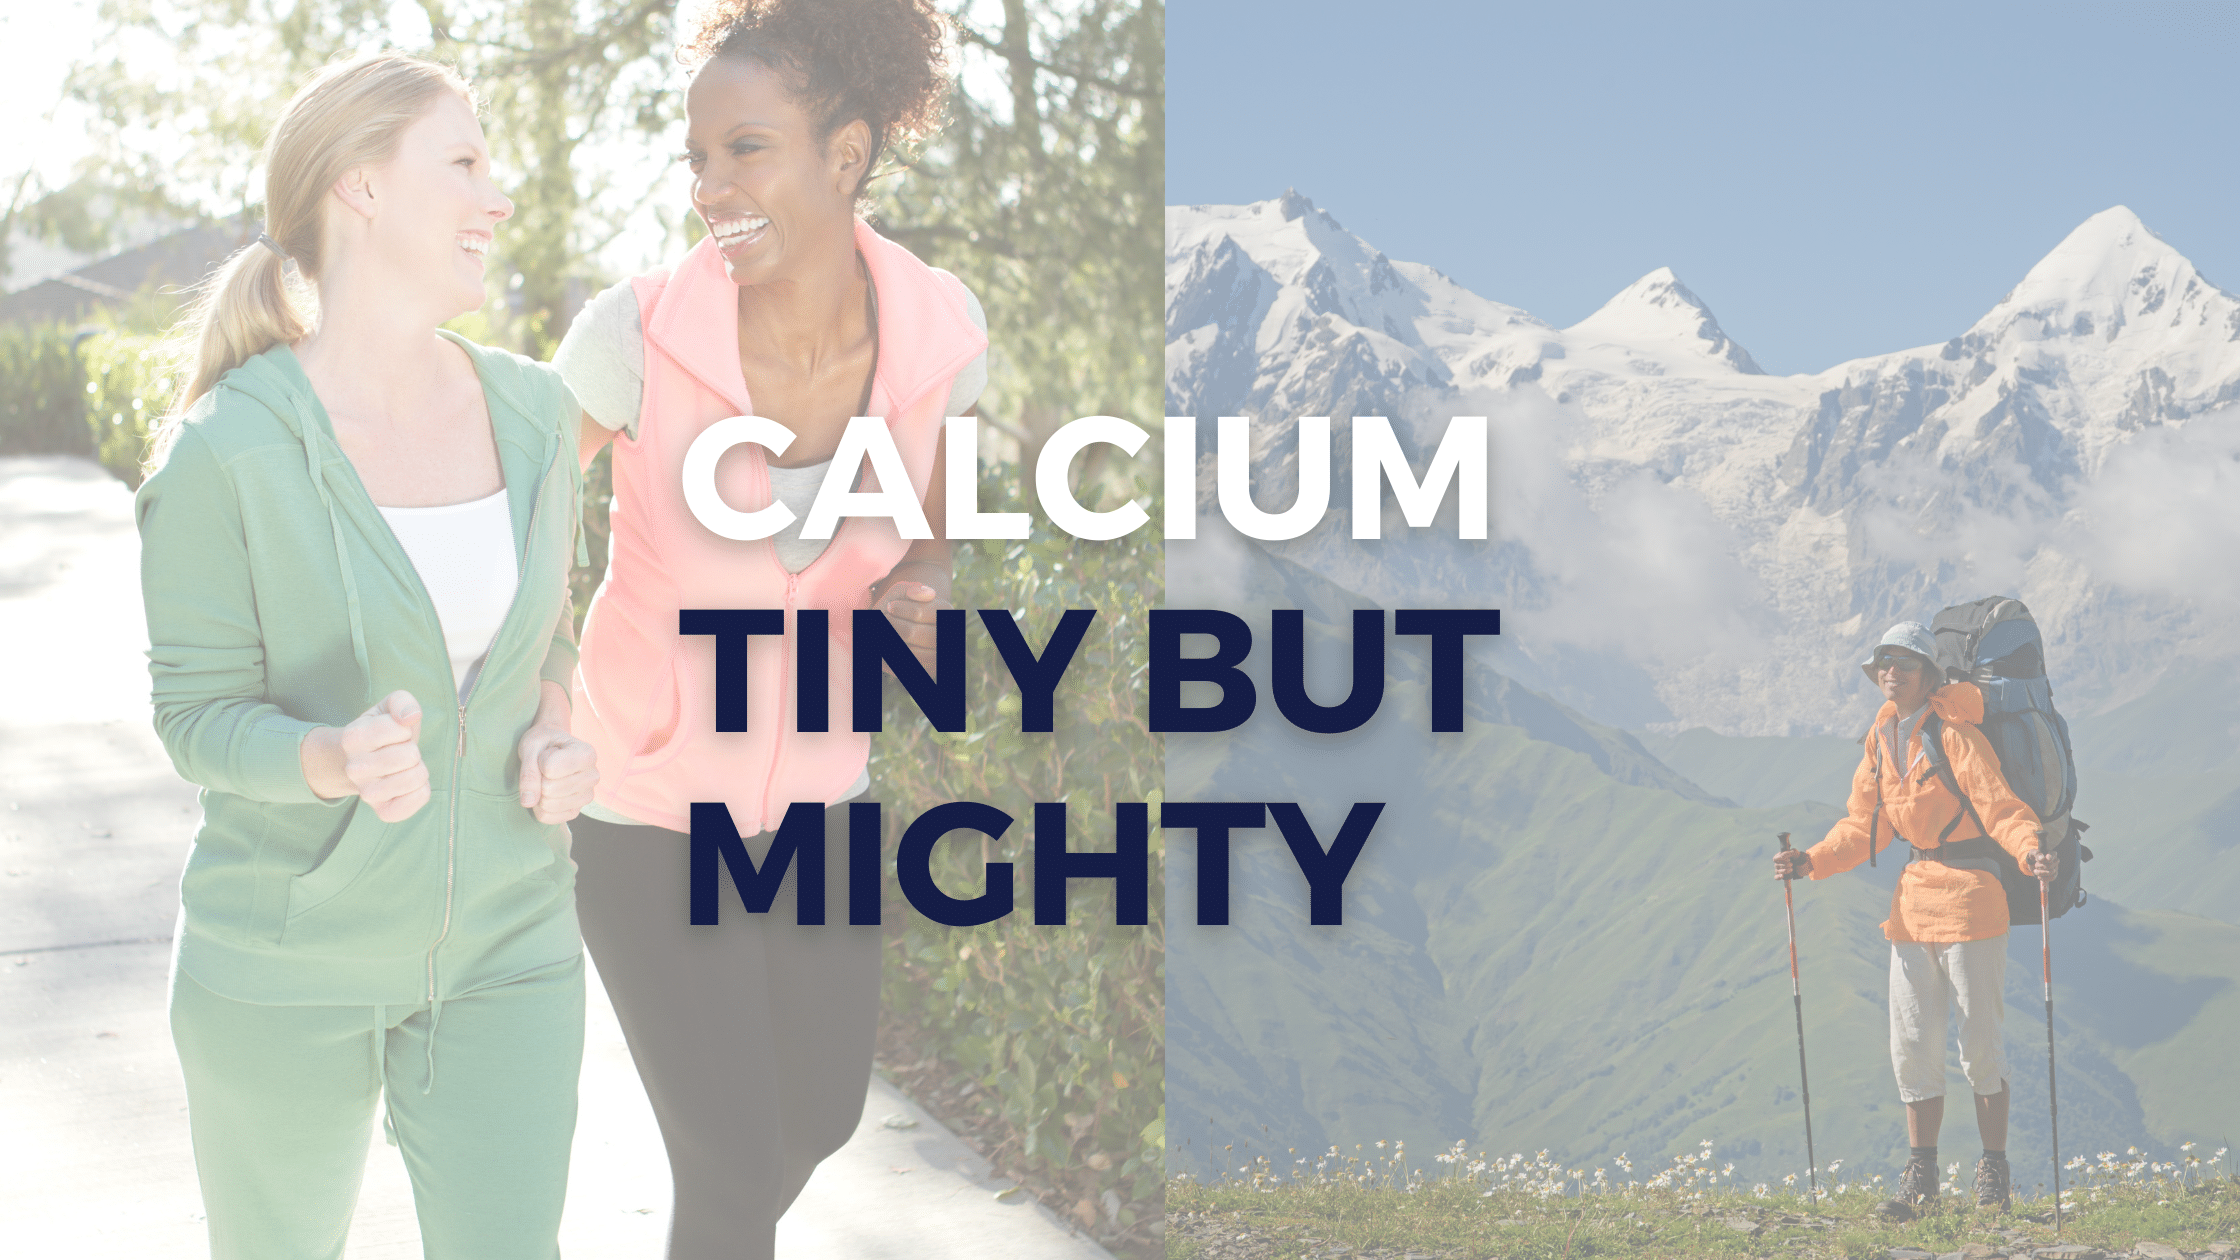 Calcium: What Is It?